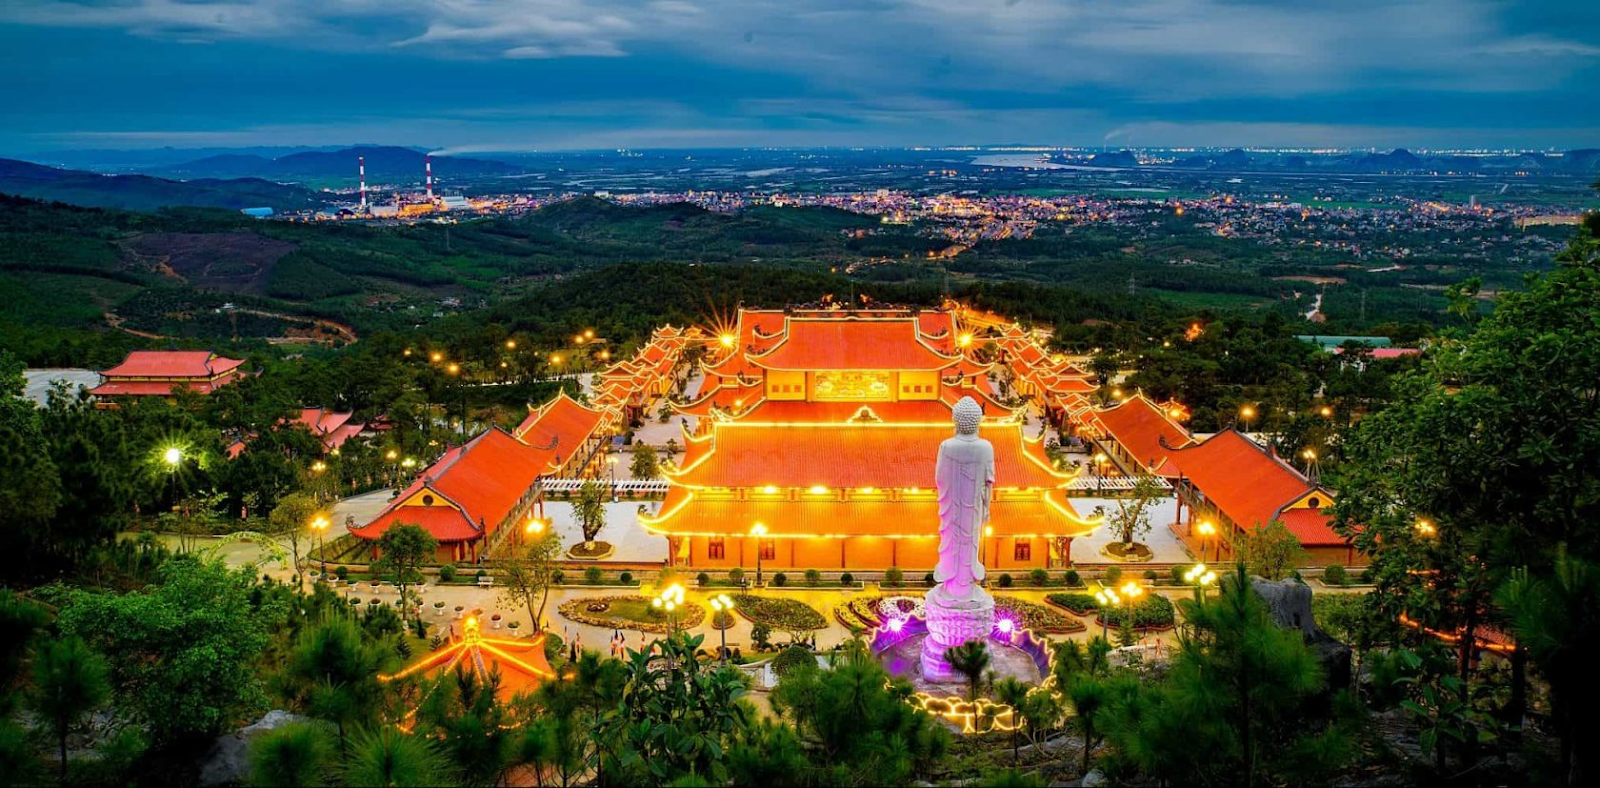 Du lịch chùa Ba Vàng - ngôi chùa linh thiêng, bề thế ở Quảng Ninh